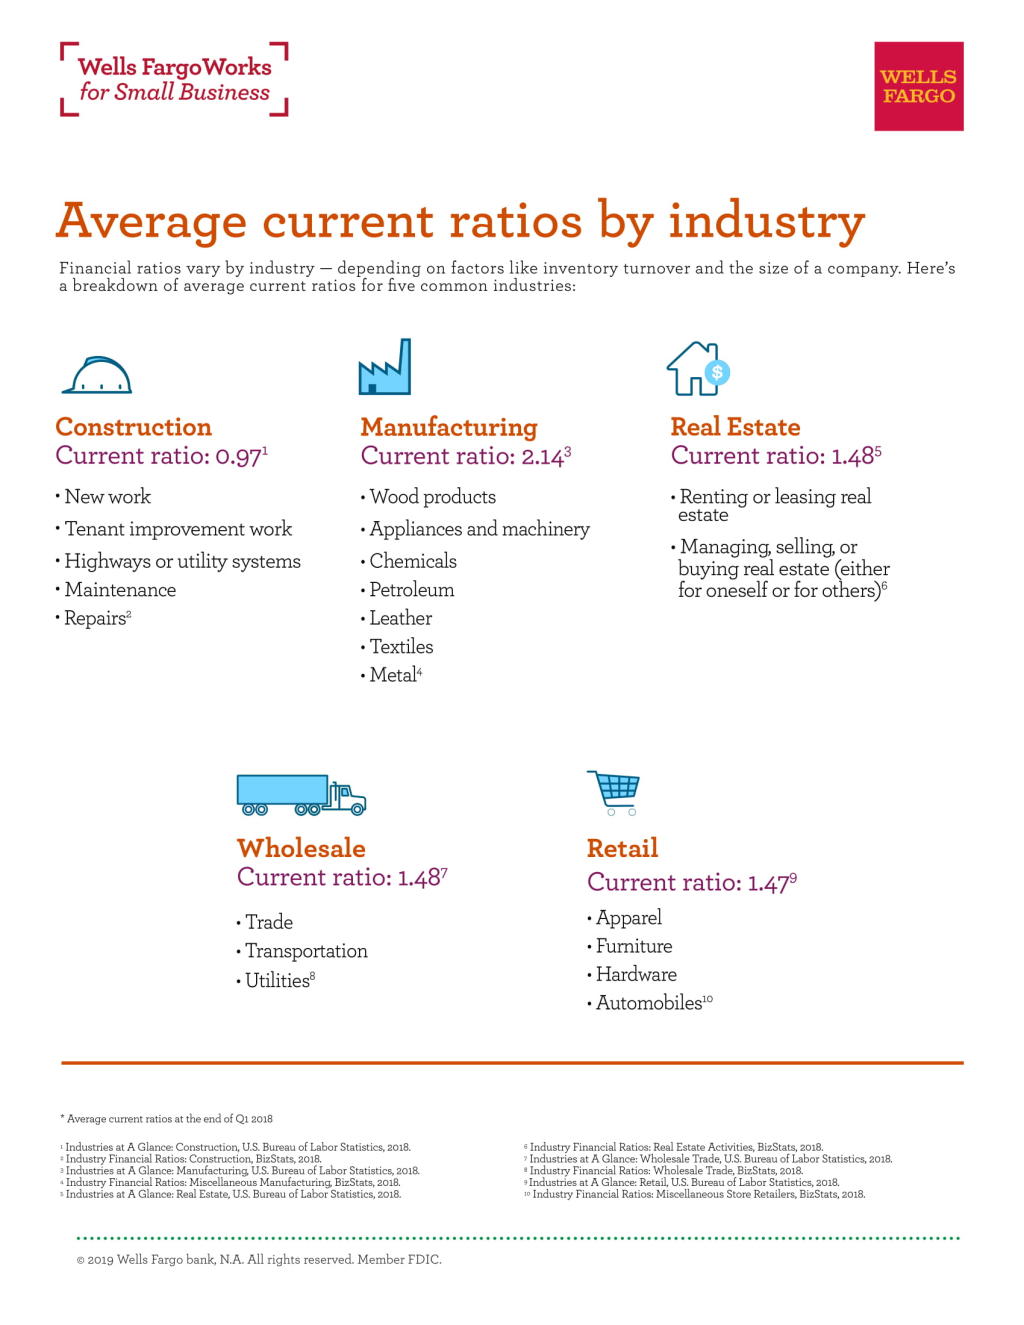 Industry ratios